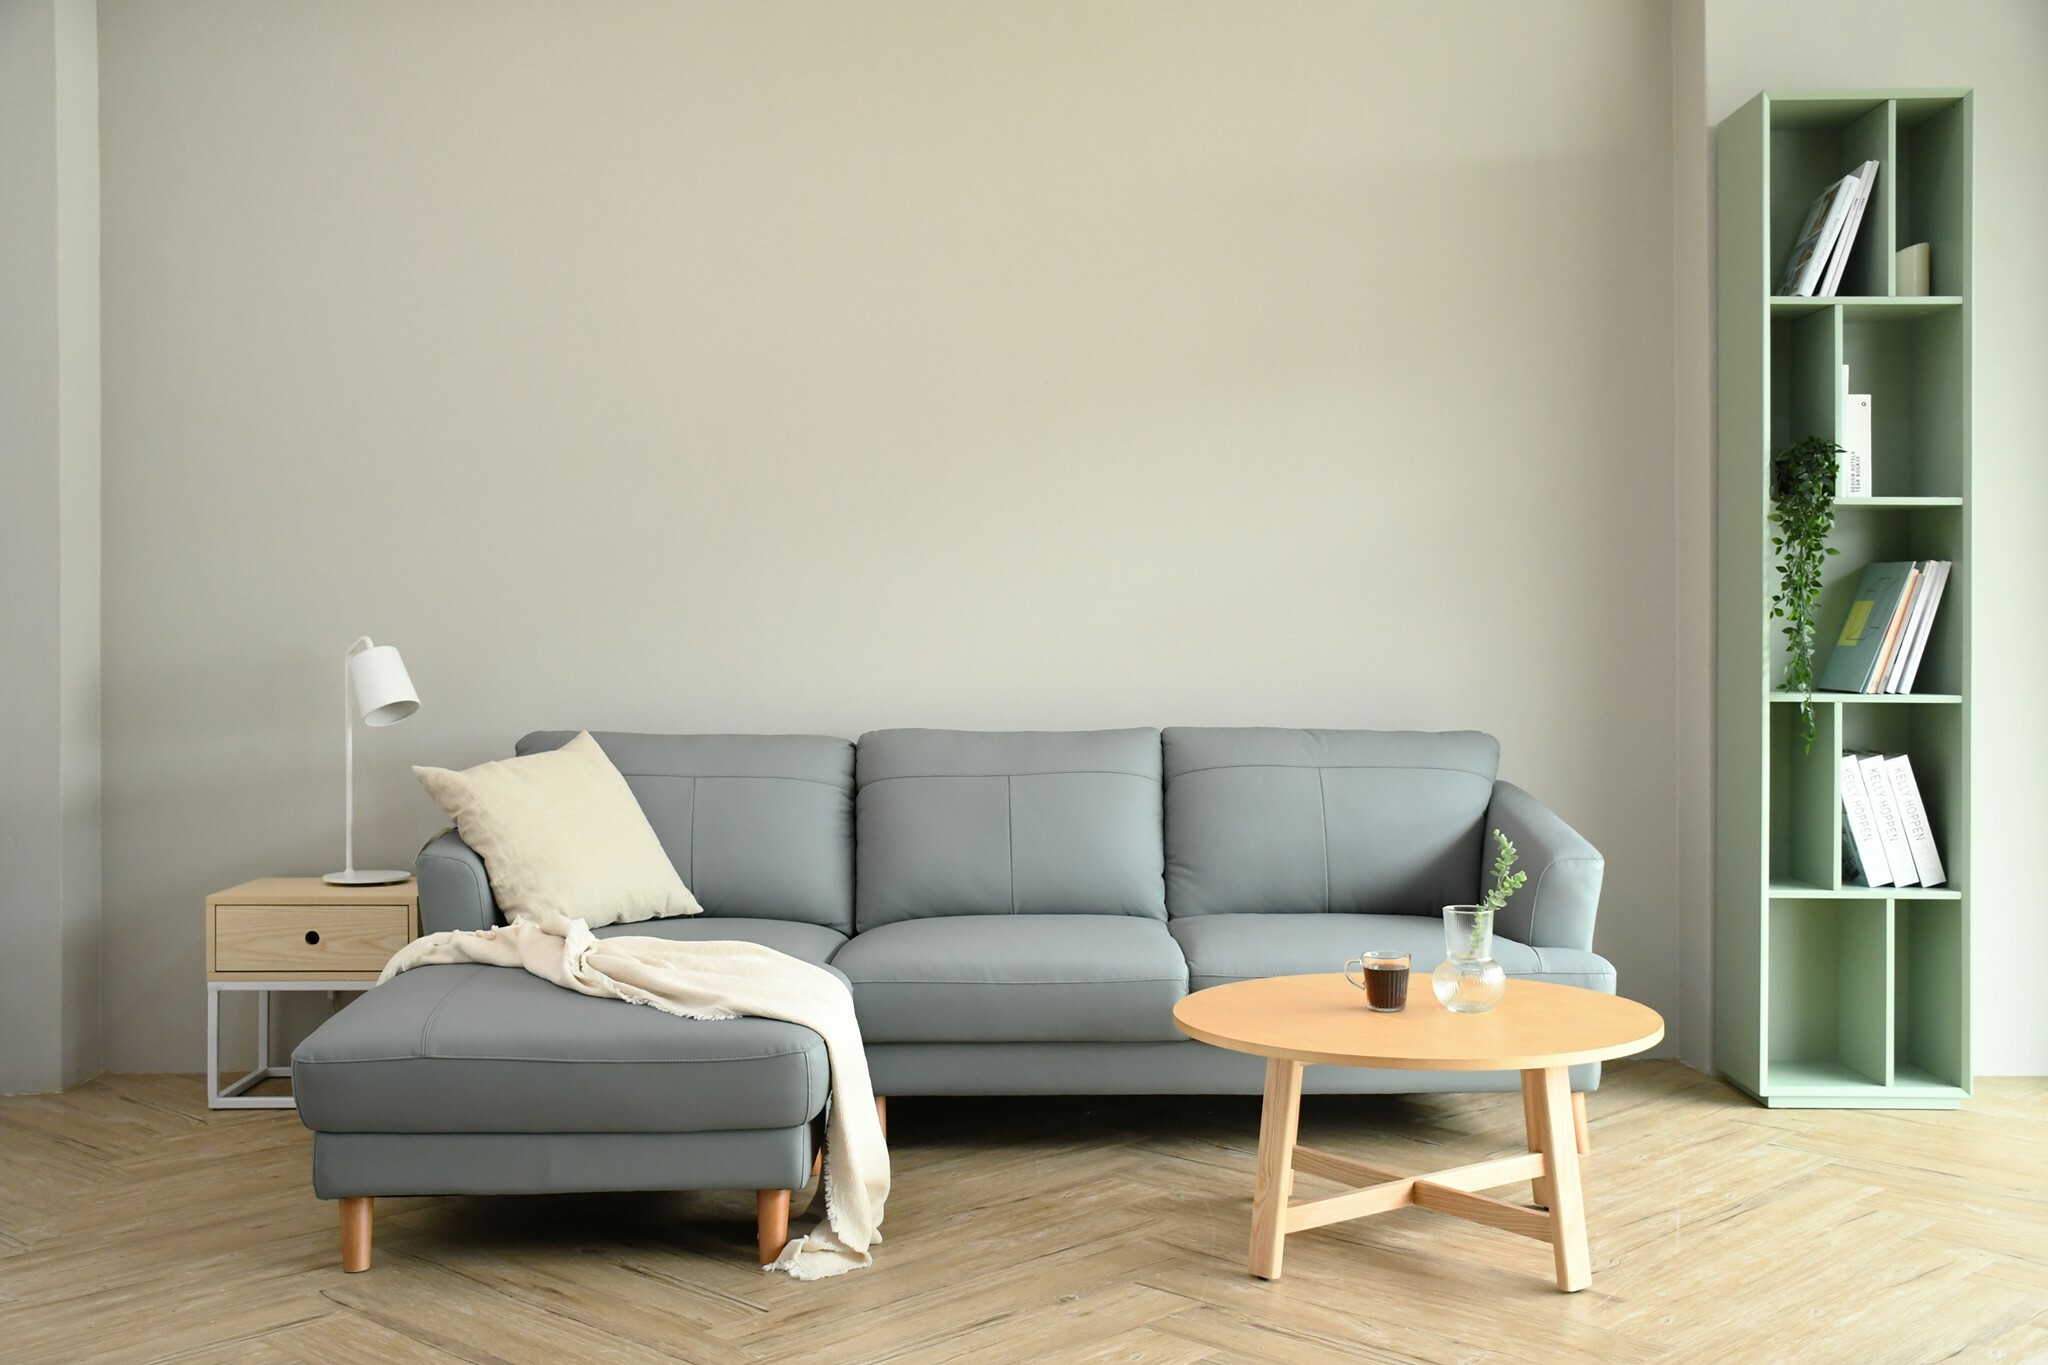 沙發挑選應與室內風格、色調相符